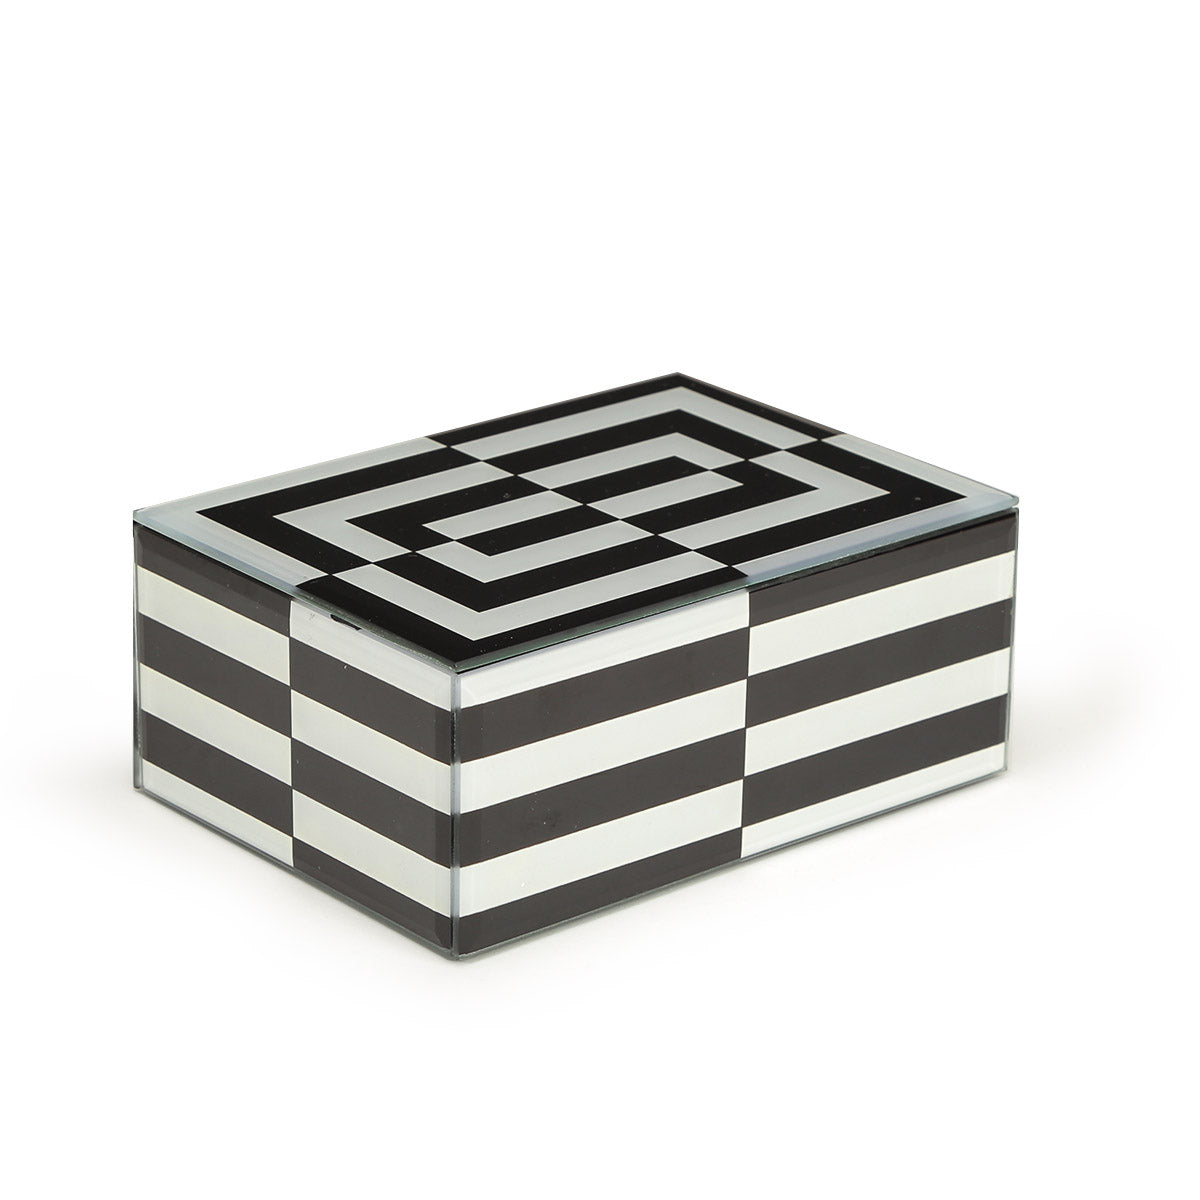 Striped Decorative Box